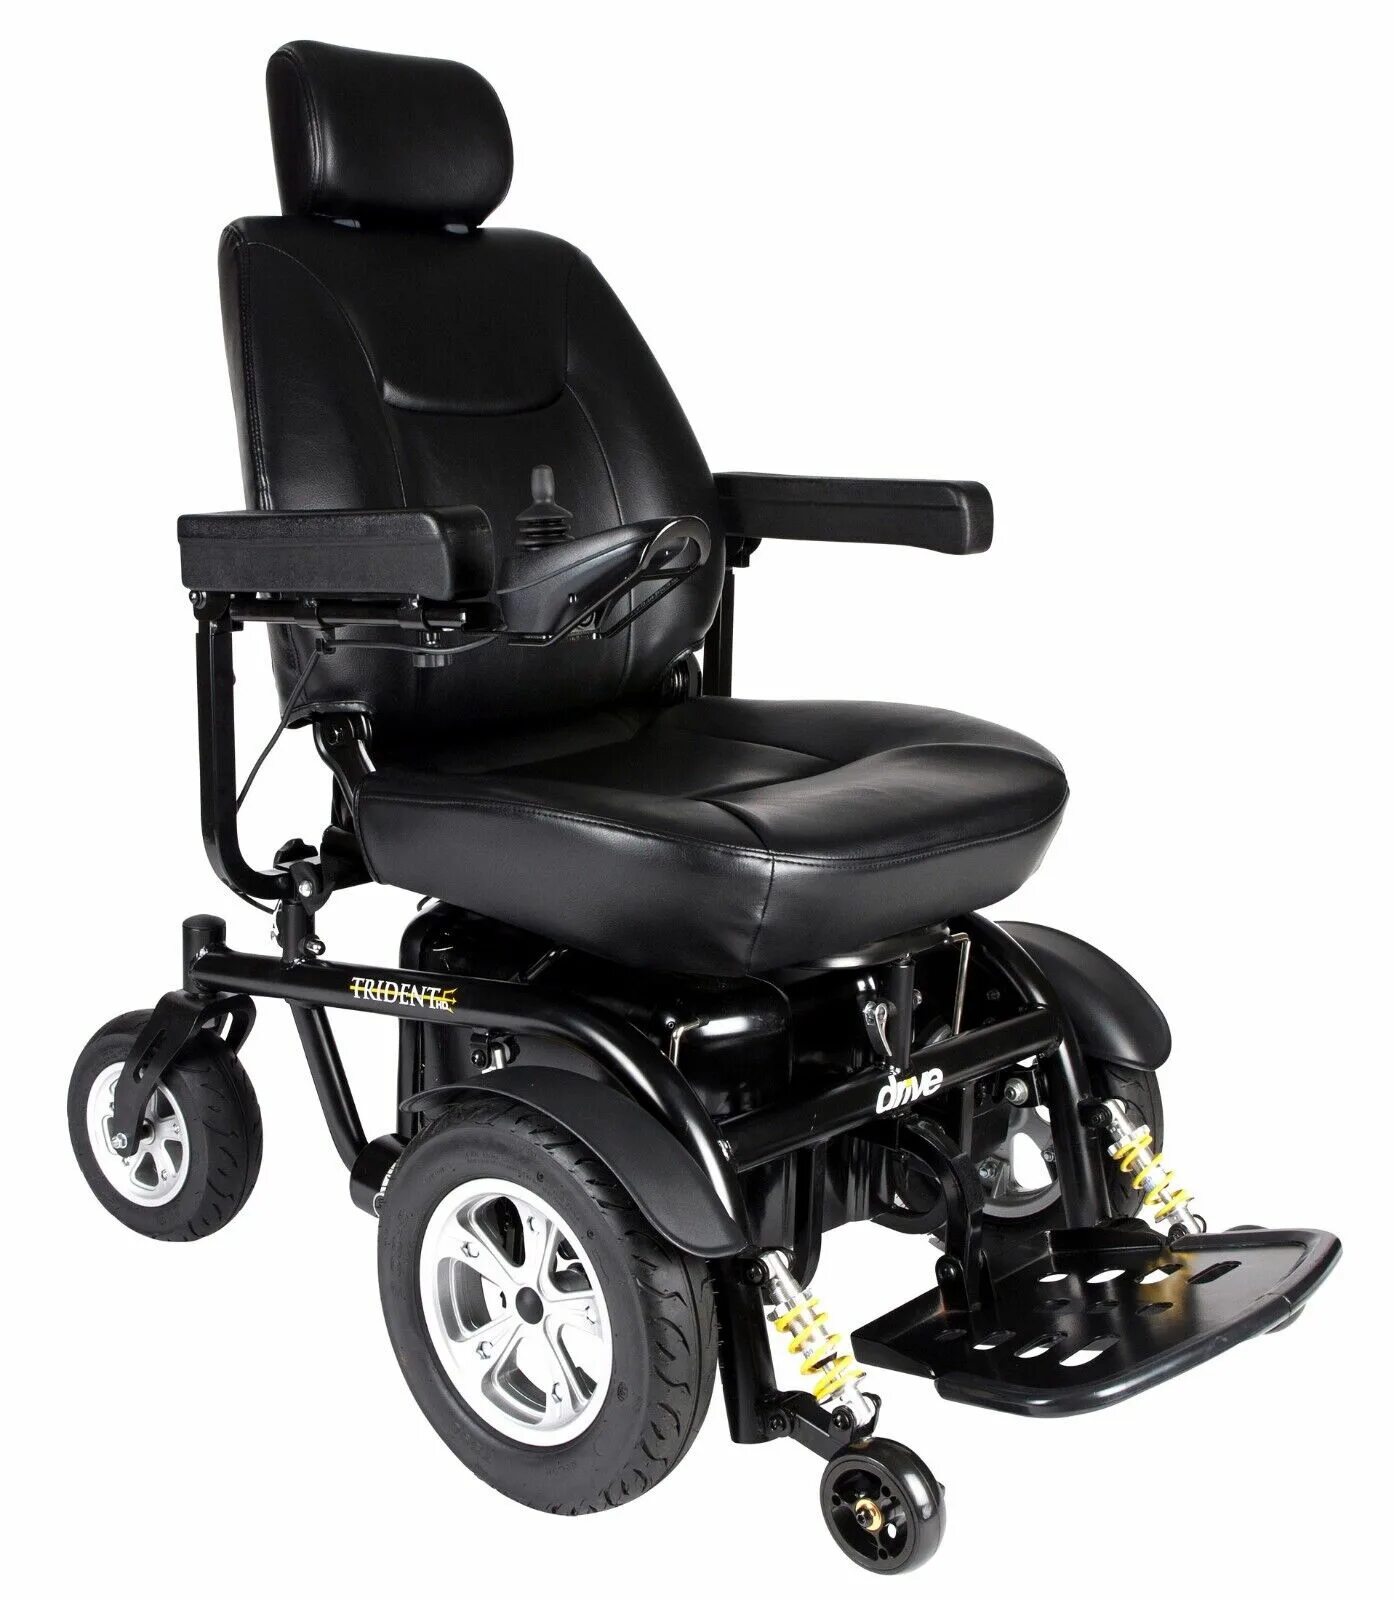 Х повер. Инвалидная коляска х повер 30. Электроскутер табуретка. Power Chair. Power wheelchair.